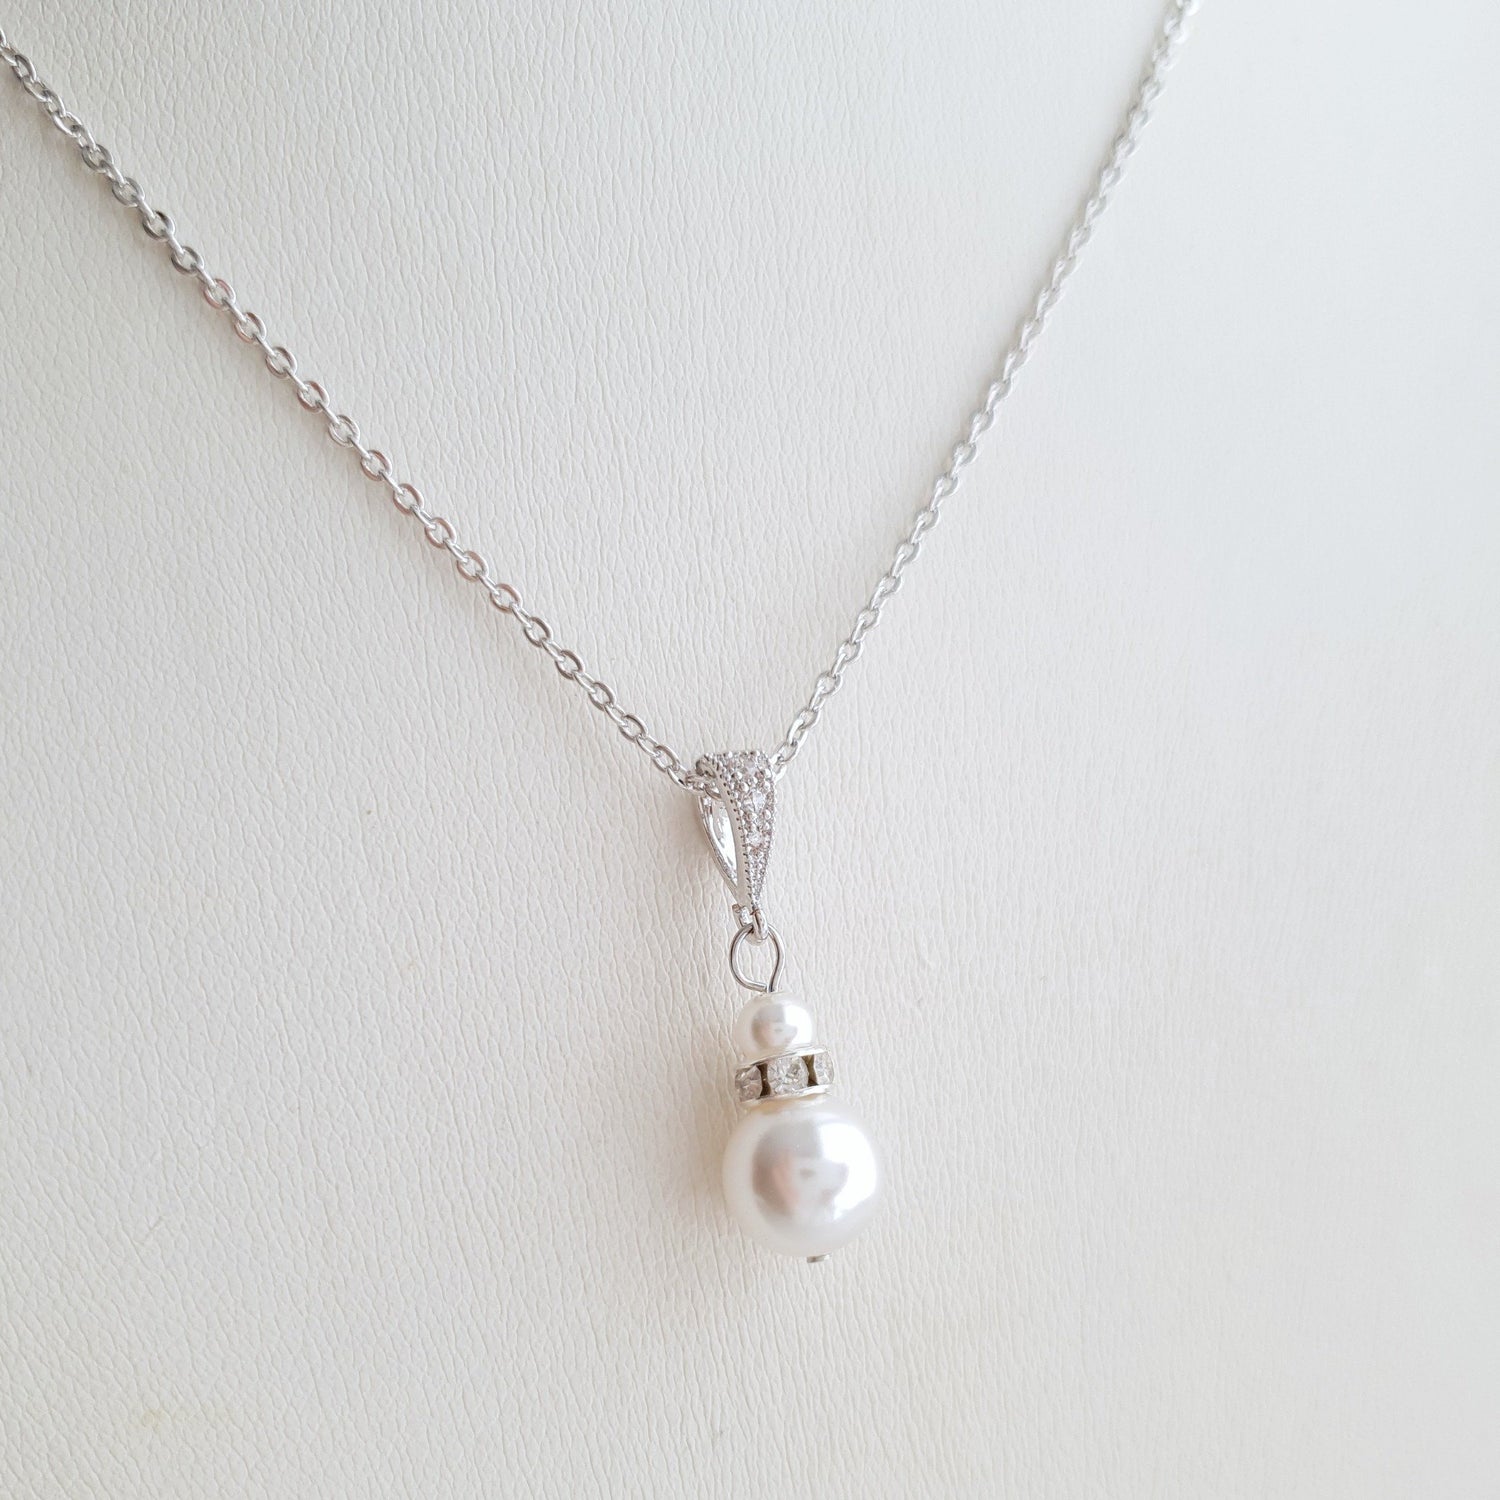 Silver Bridesmaid Pearl Necklace- Ava - PoetryDesigns